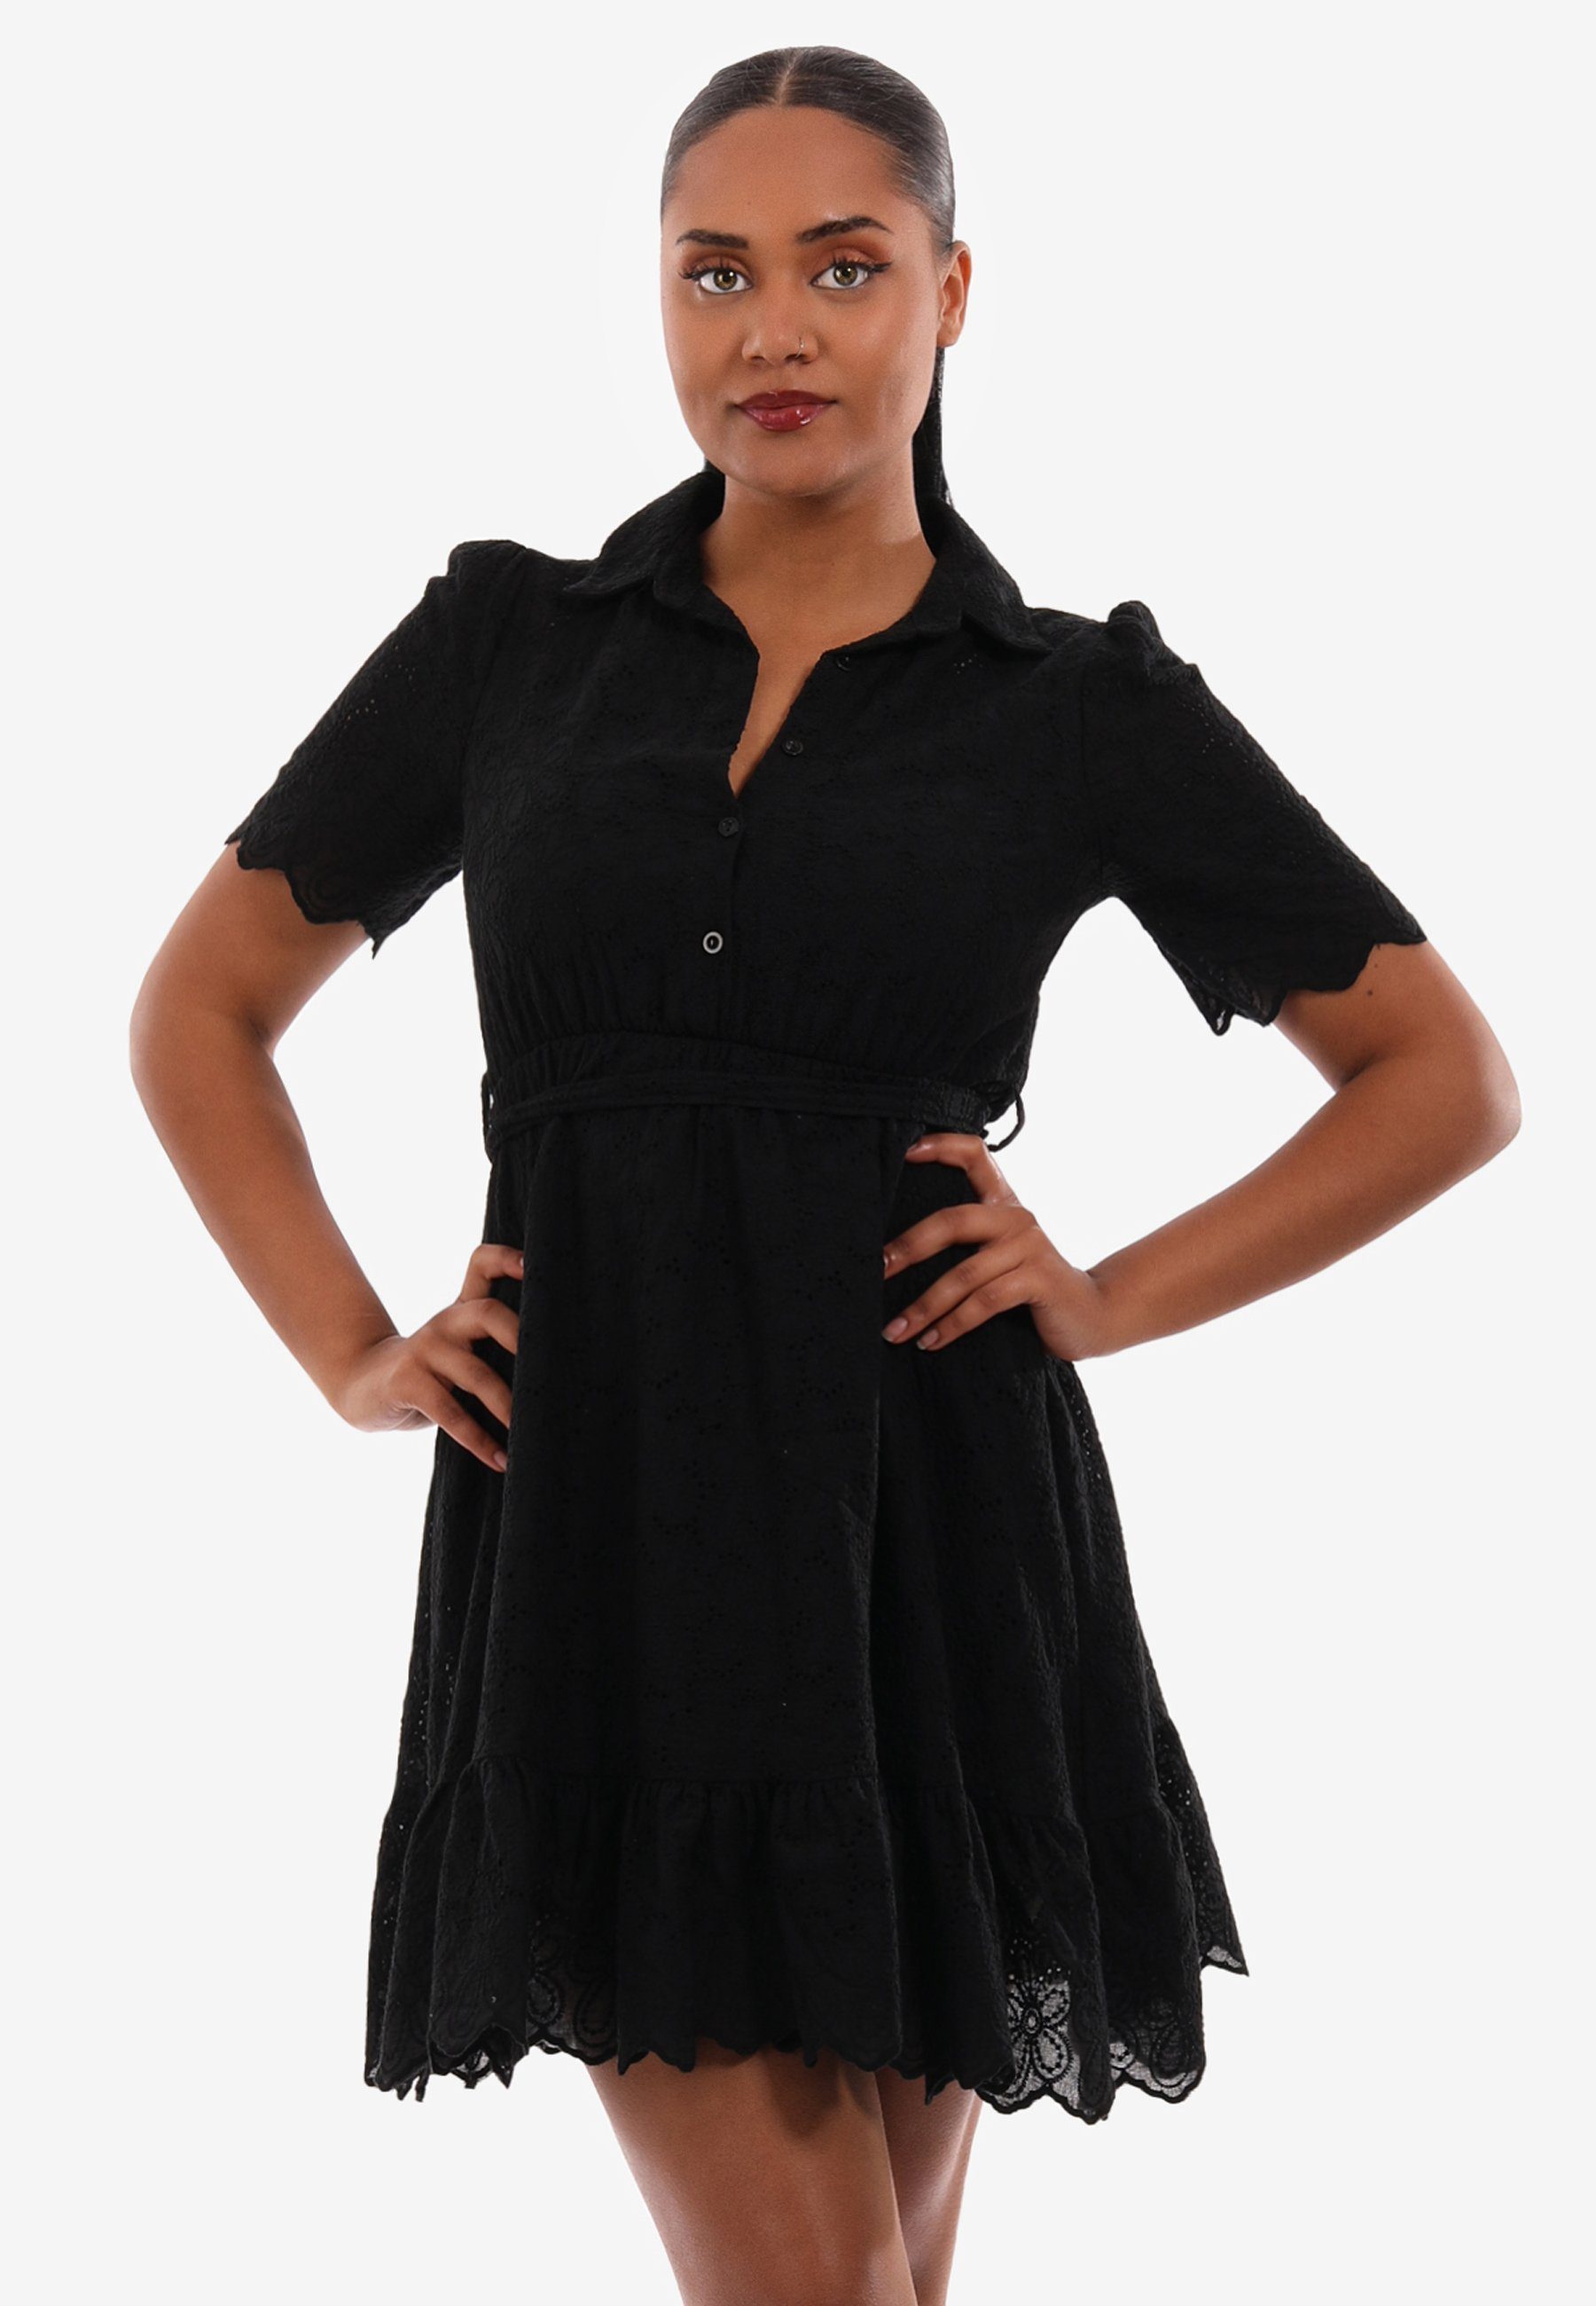 Minikleid mit Taillengürtel schwarz aus in Style Minikleid YC mit Fashion und Unifarbe, Spitze Volant Volant &